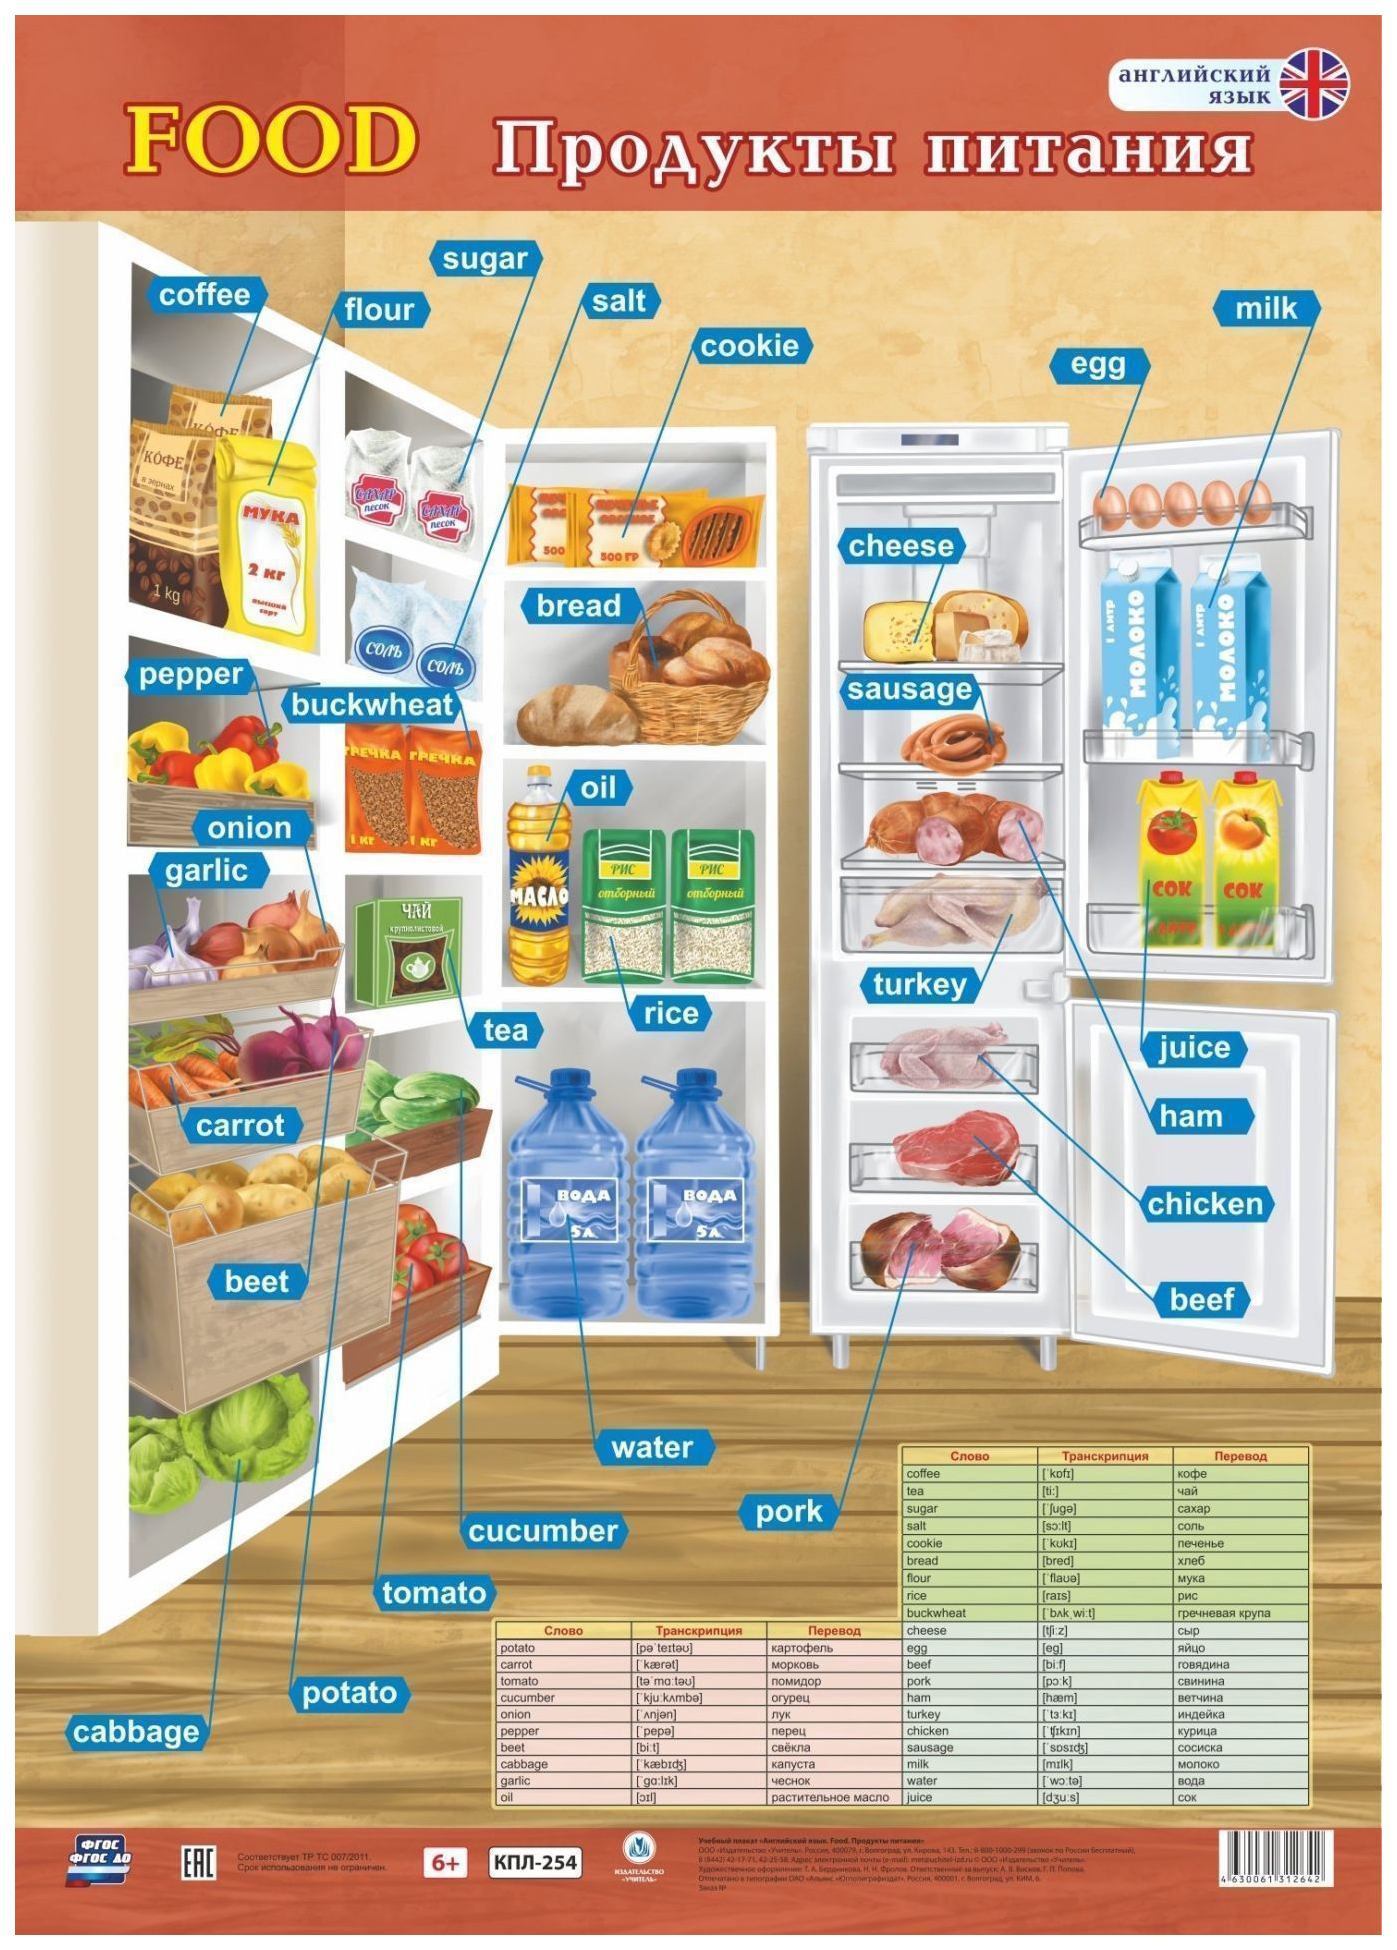 Категории продуктов питания в магазине. Продукты питания на английском. Плакат английский язык. Название продуктов питания. Продукты на англ.